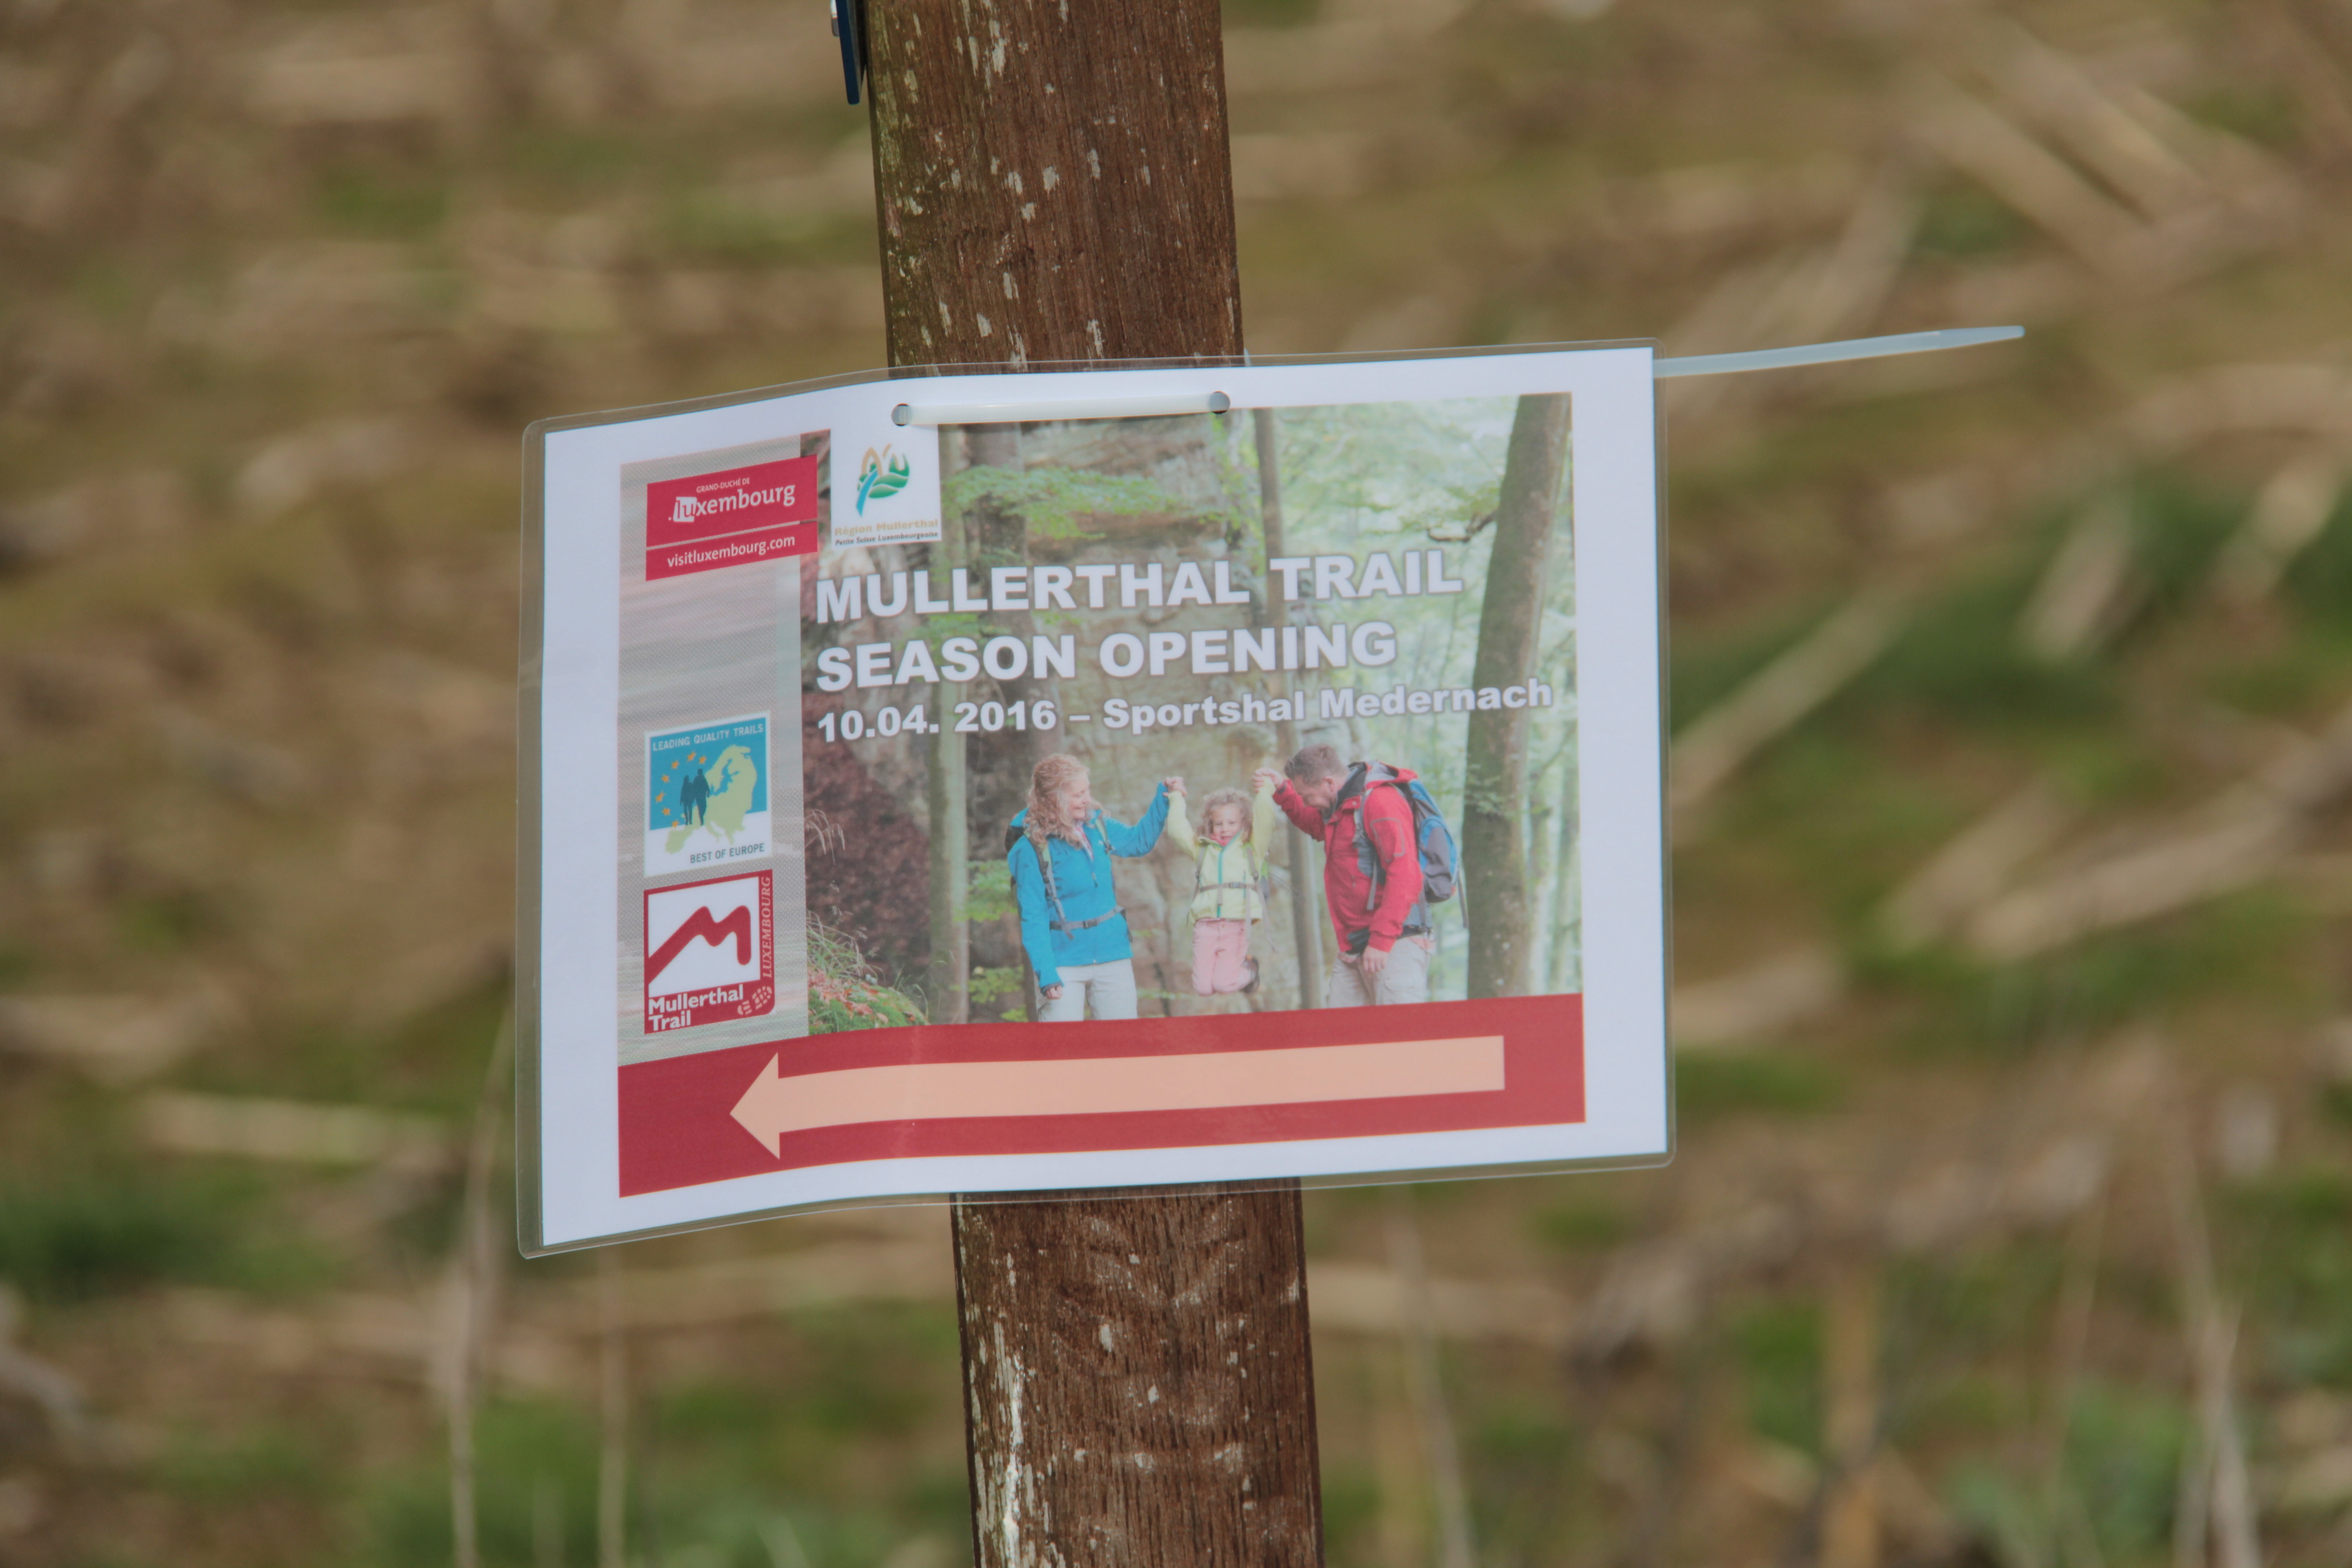 Mullerthal Trail Seasoning Opening